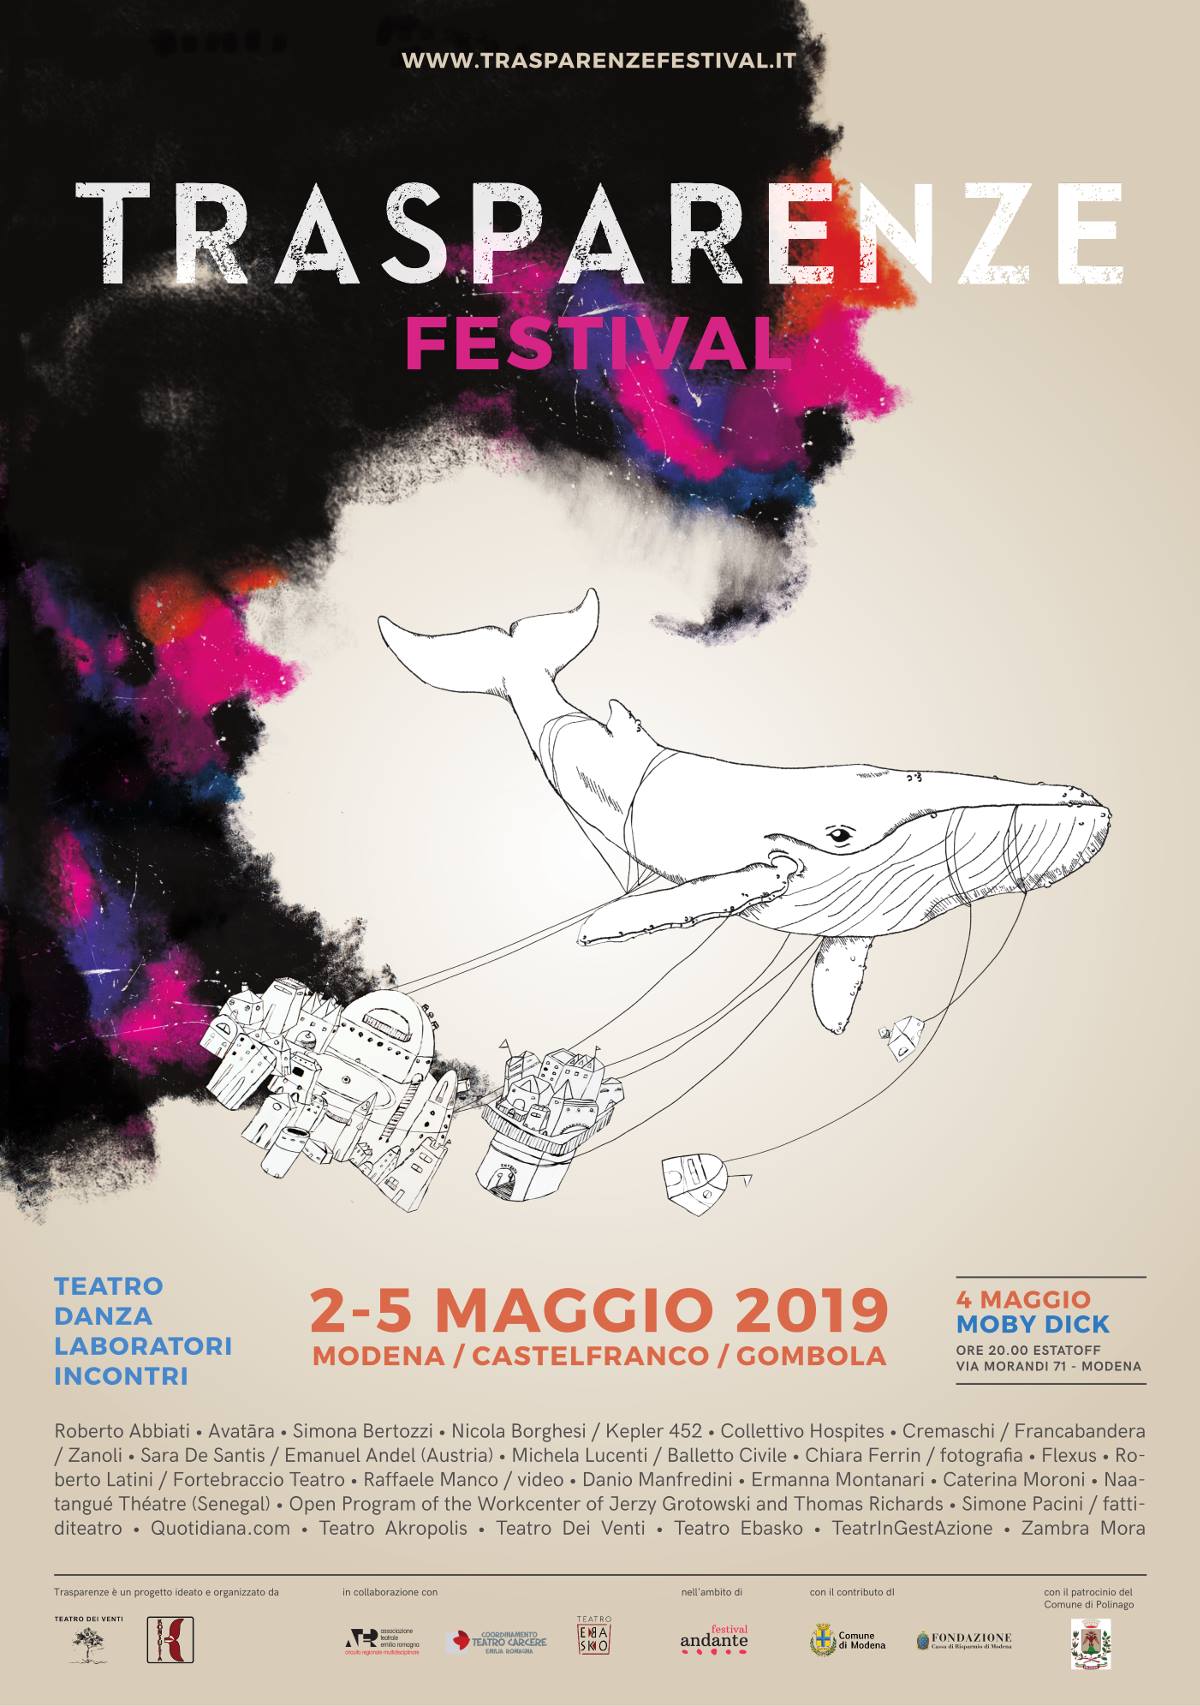 Trasparenze Festival, a Modena dal 2 al 5 maggio